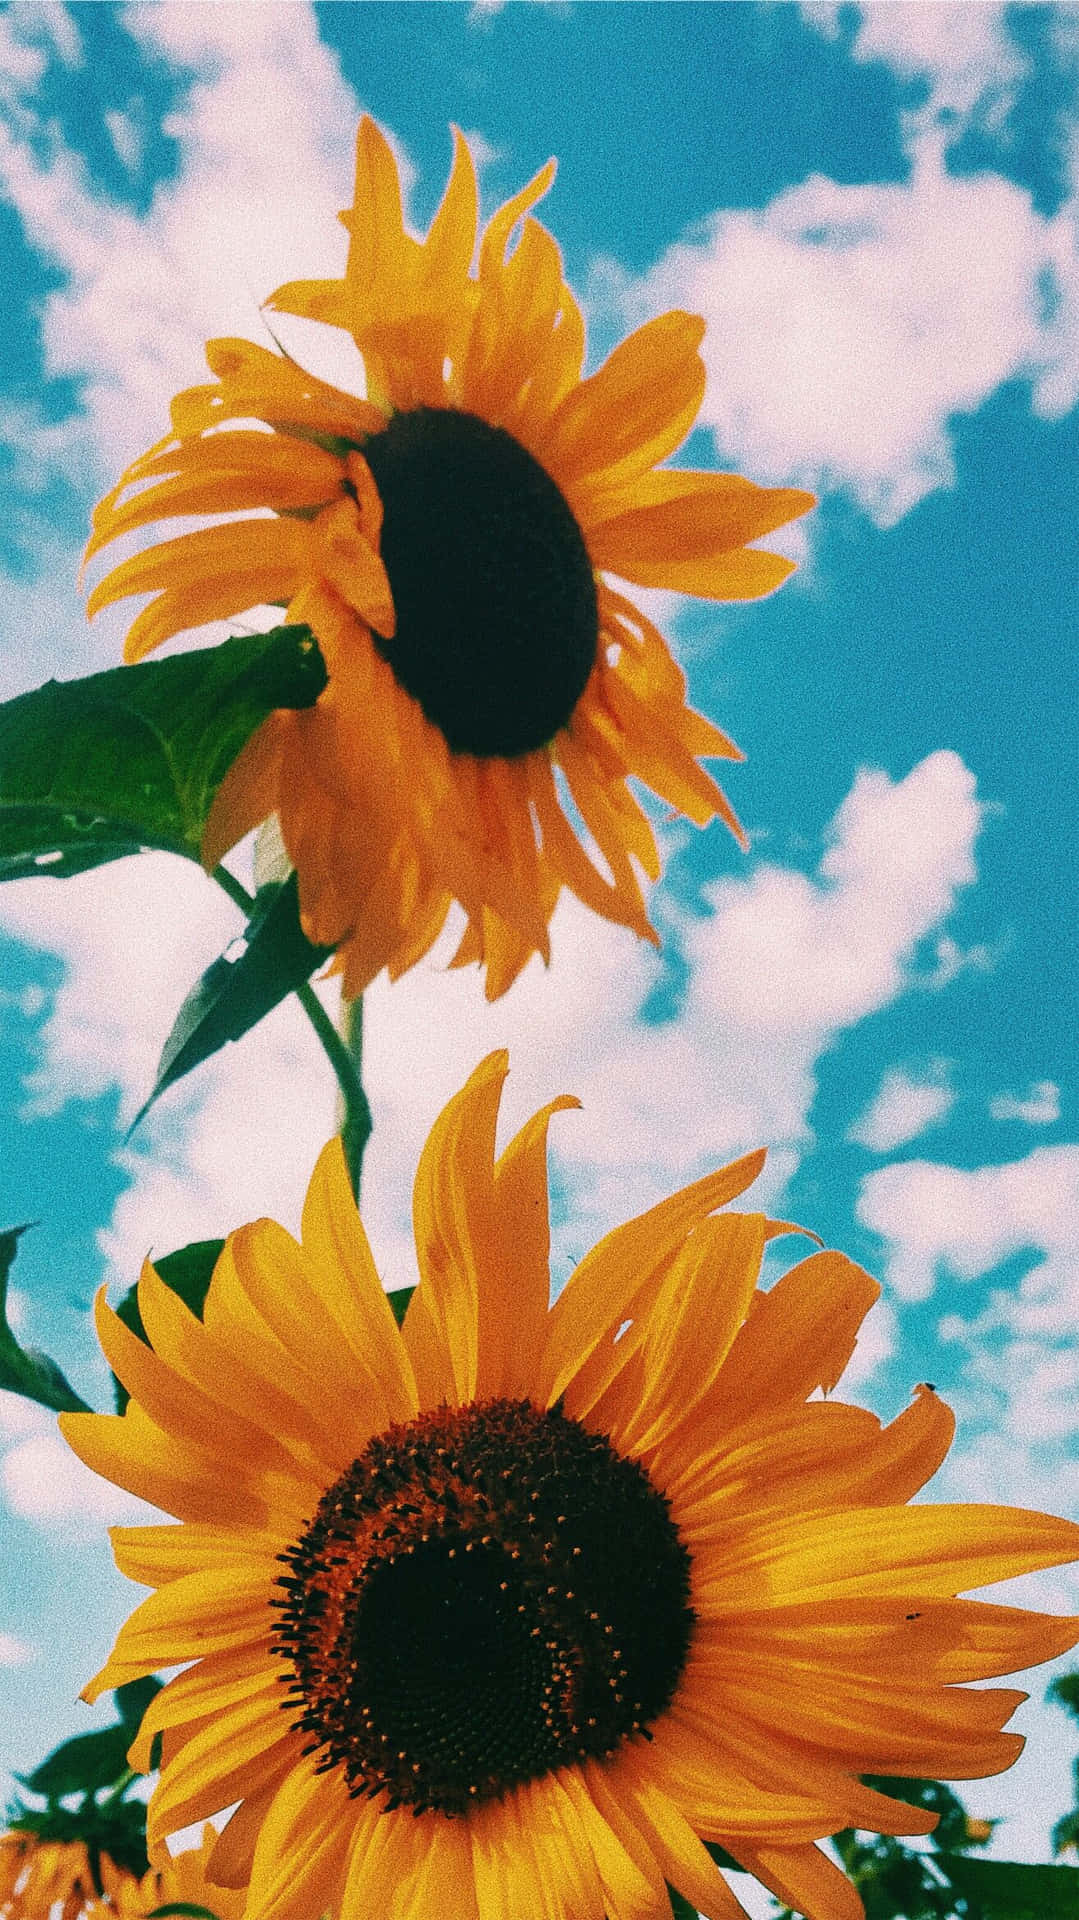 Sunflower Aesthetic - Wallpaper of Beauty